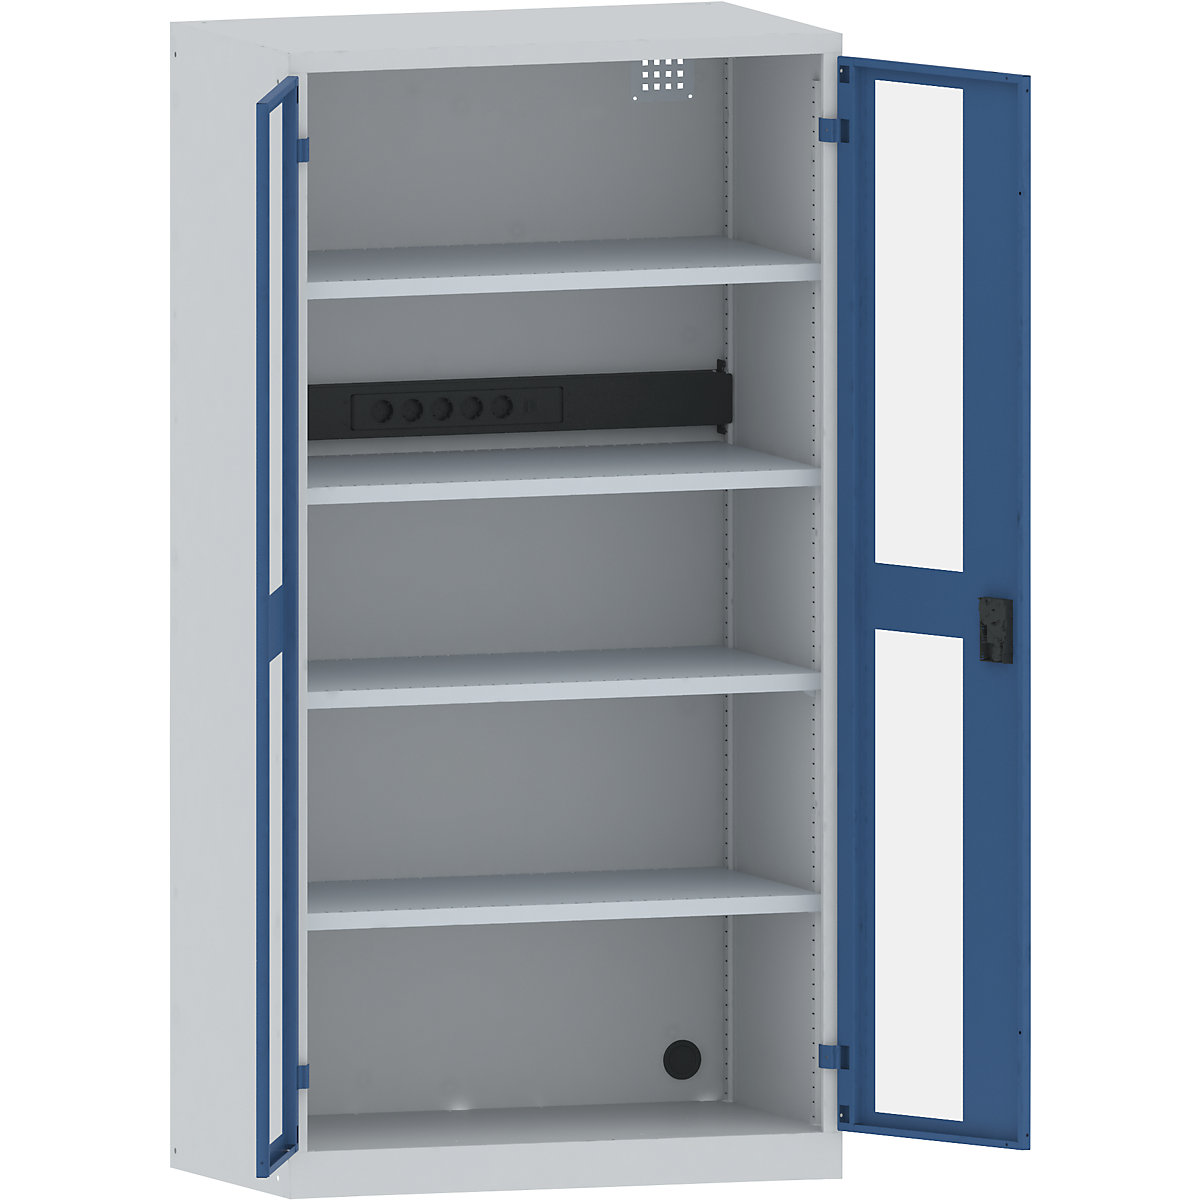 LISTA – Skříň pro nabíjení akumulátorů, 4 police, dveře s okénkem, zásuvková lišta na zadní straně, šedá / modrá